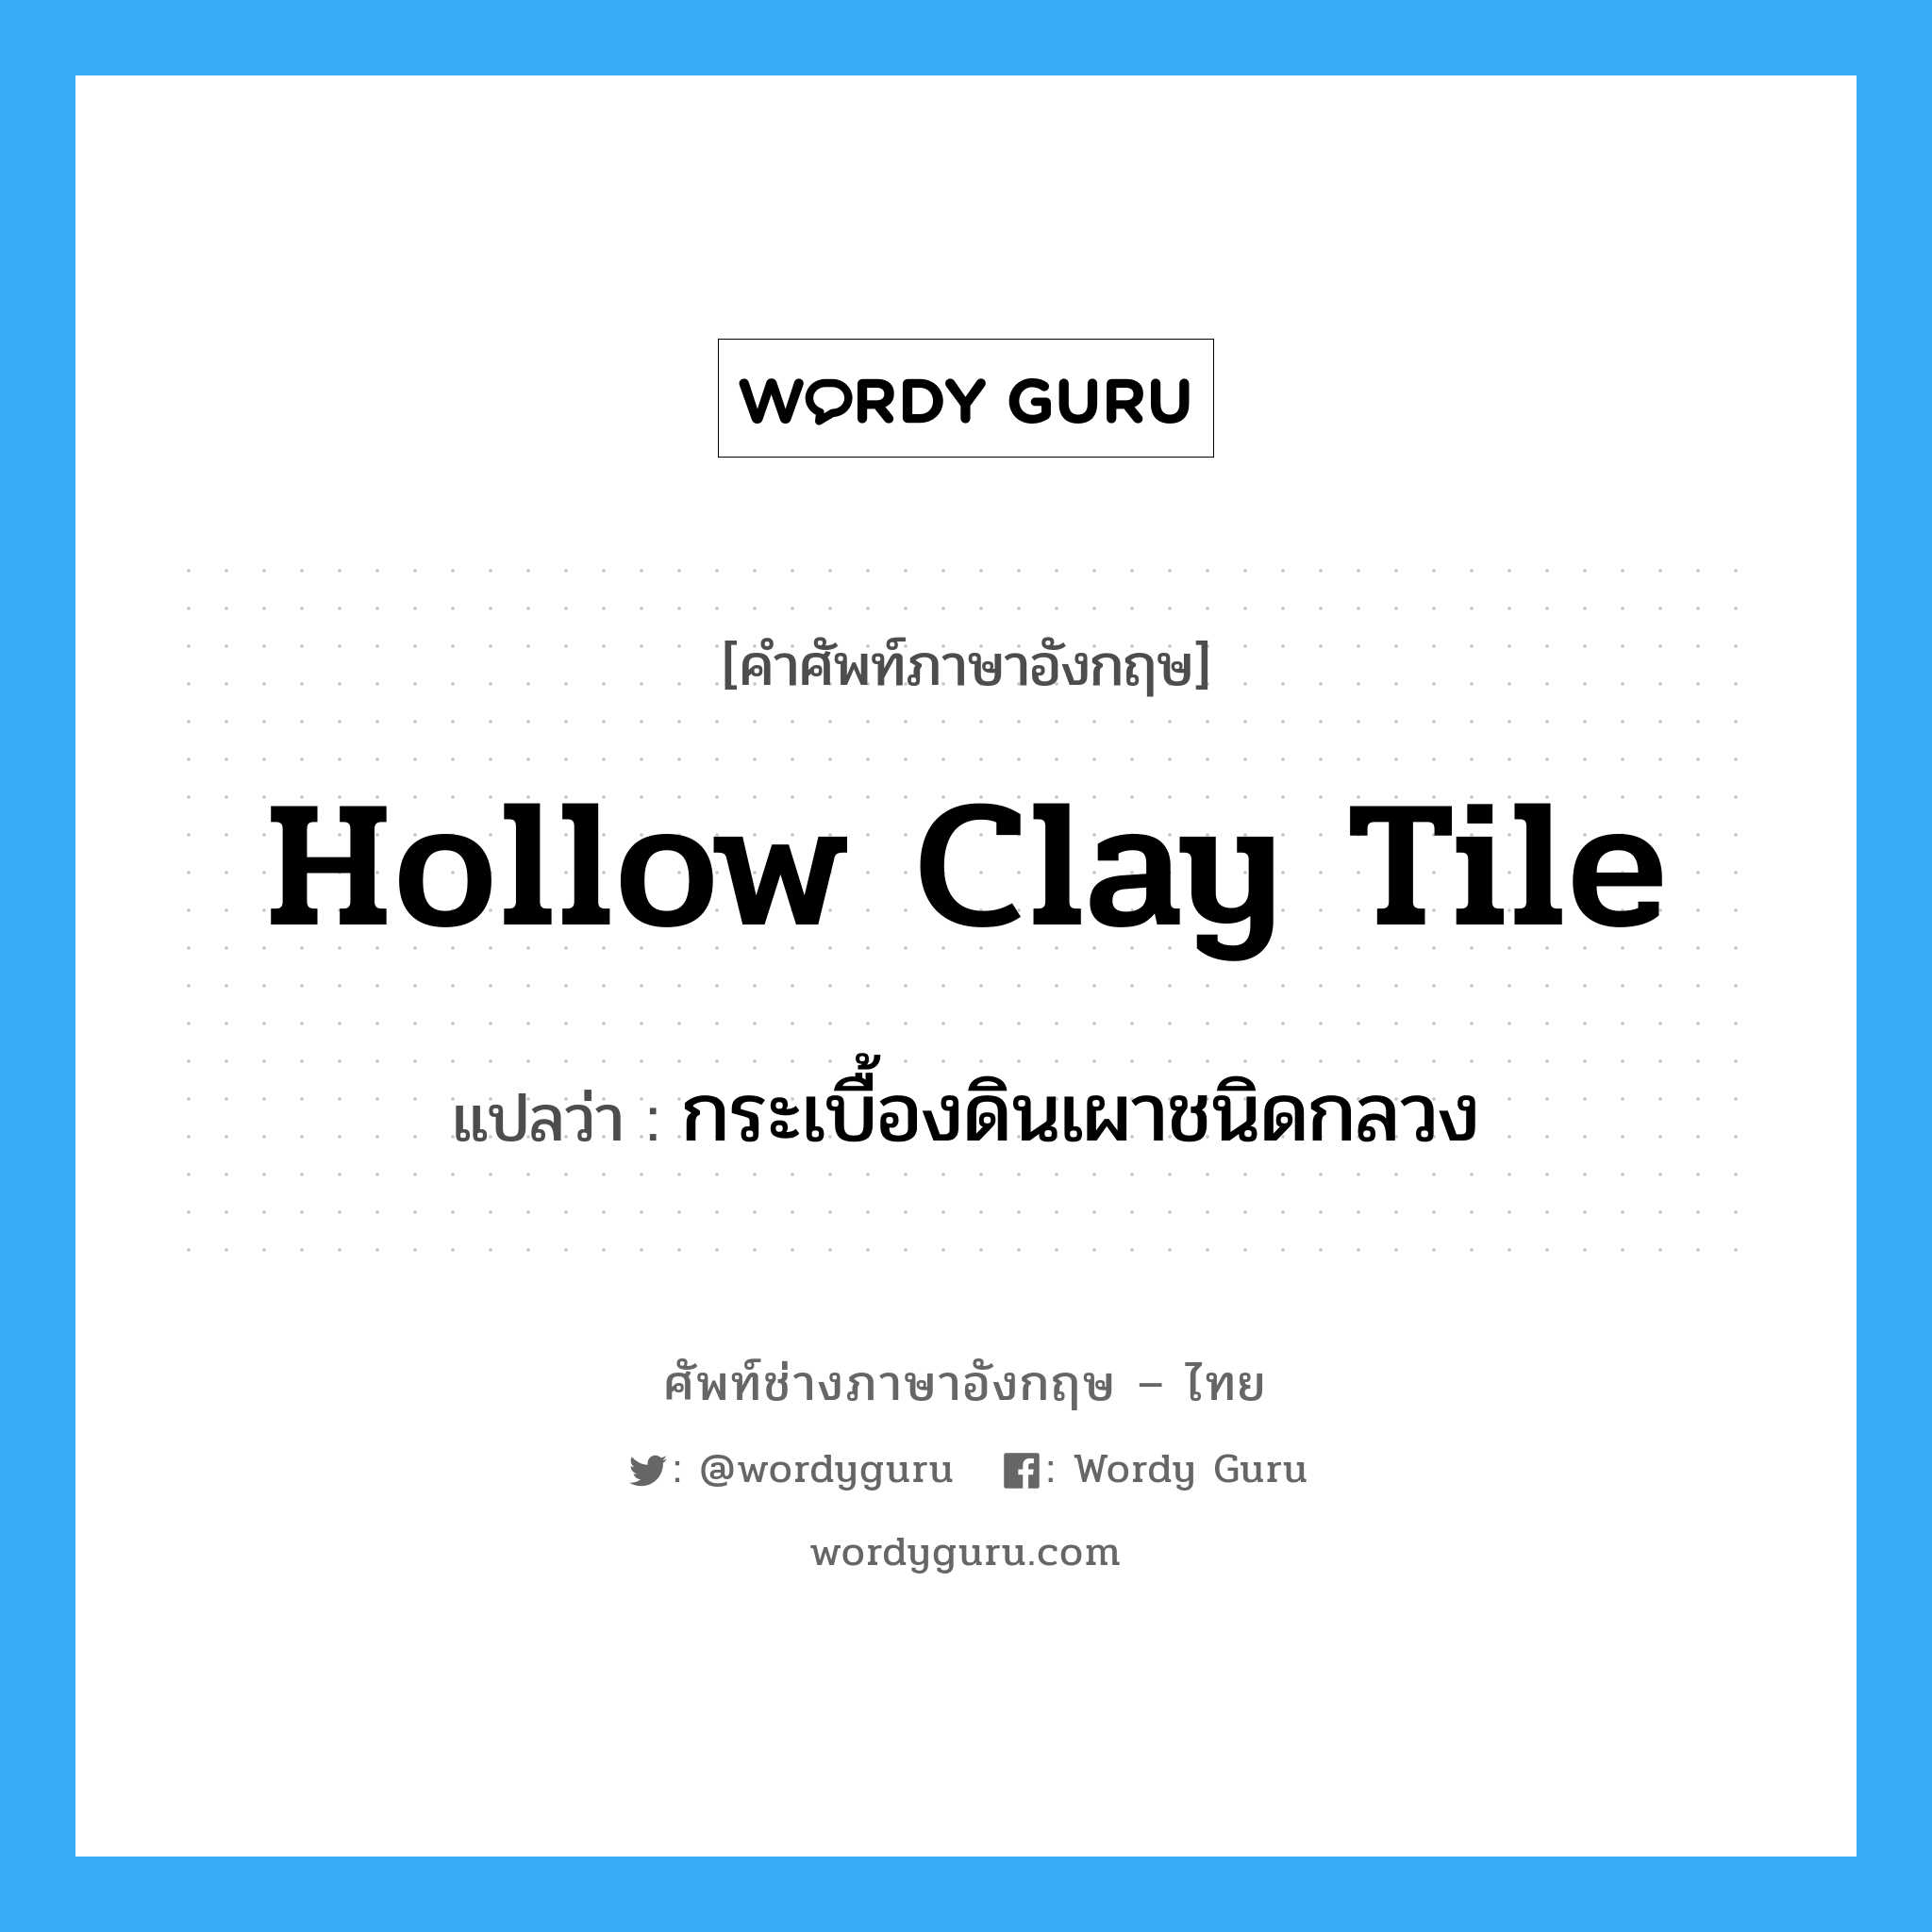 hollow-clay tile แปลว่า?, คำศัพท์ช่างภาษาอังกฤษ - ไทย hollow clay tile คำศัพท์ภาษาอังกฤษ hollow clay tile แปลว่า กระเบื้องดินเผาชนิดกลวง